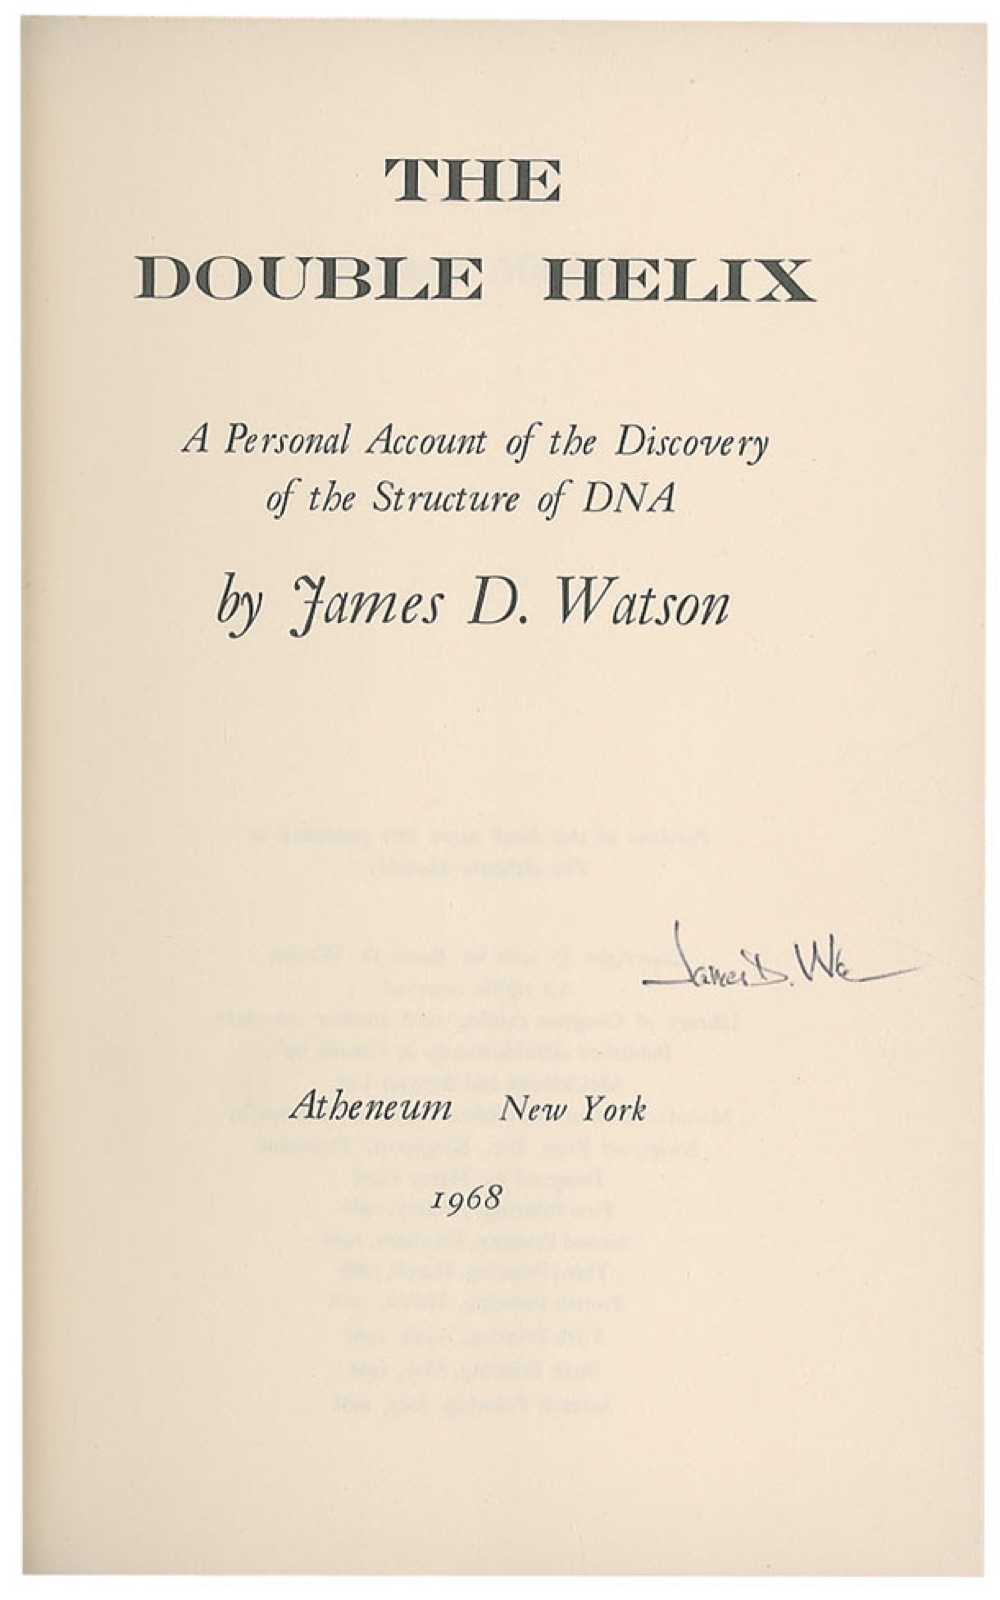 Lot #224 DNA: James D. Watson